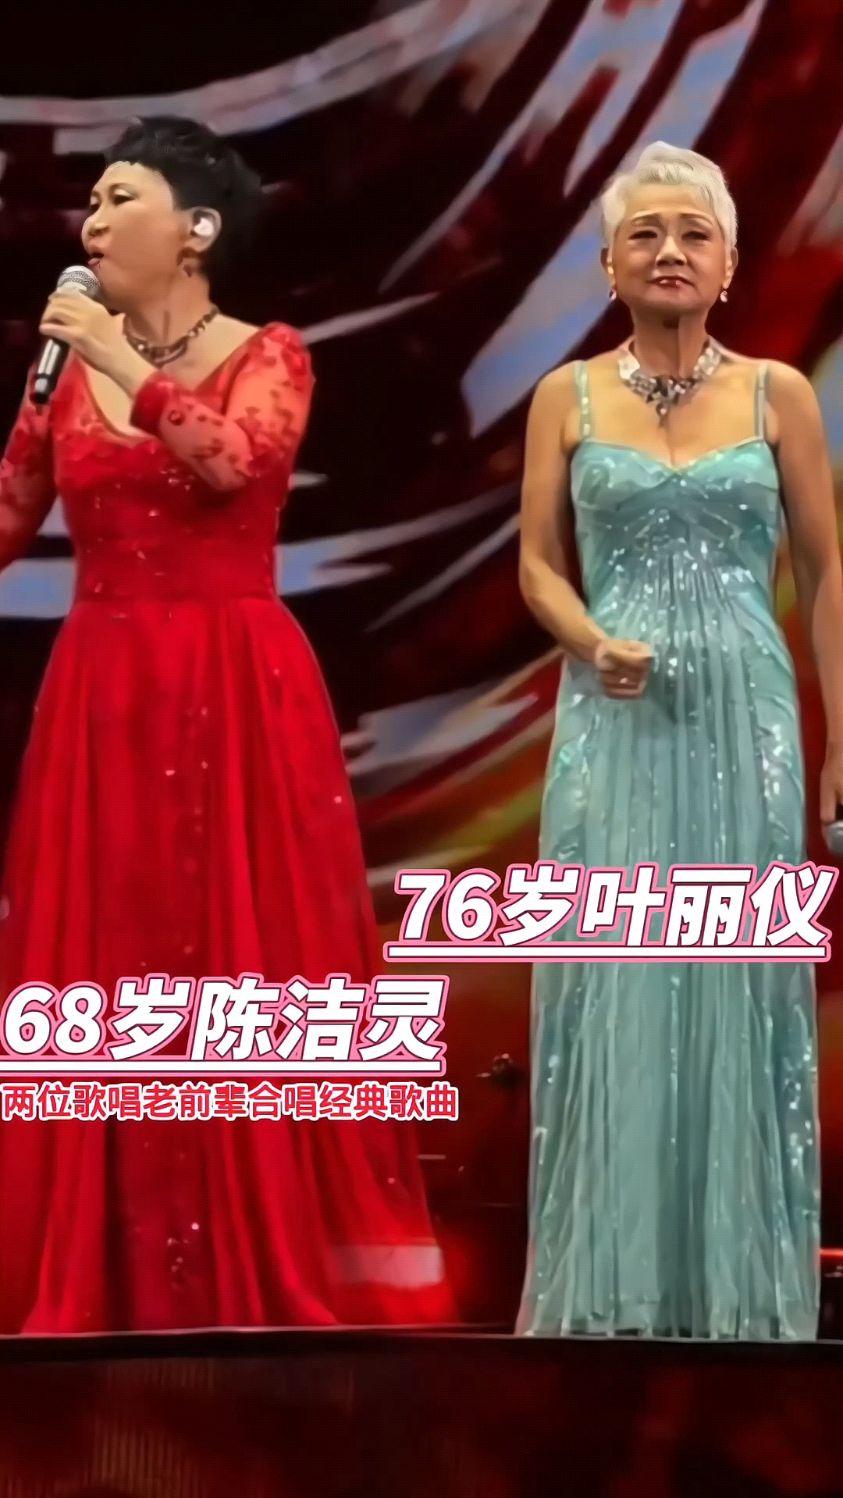 香港老牌儿歌唱家陈洁灵与叶丽仪,合唱经典歌曲《世间始终你好》